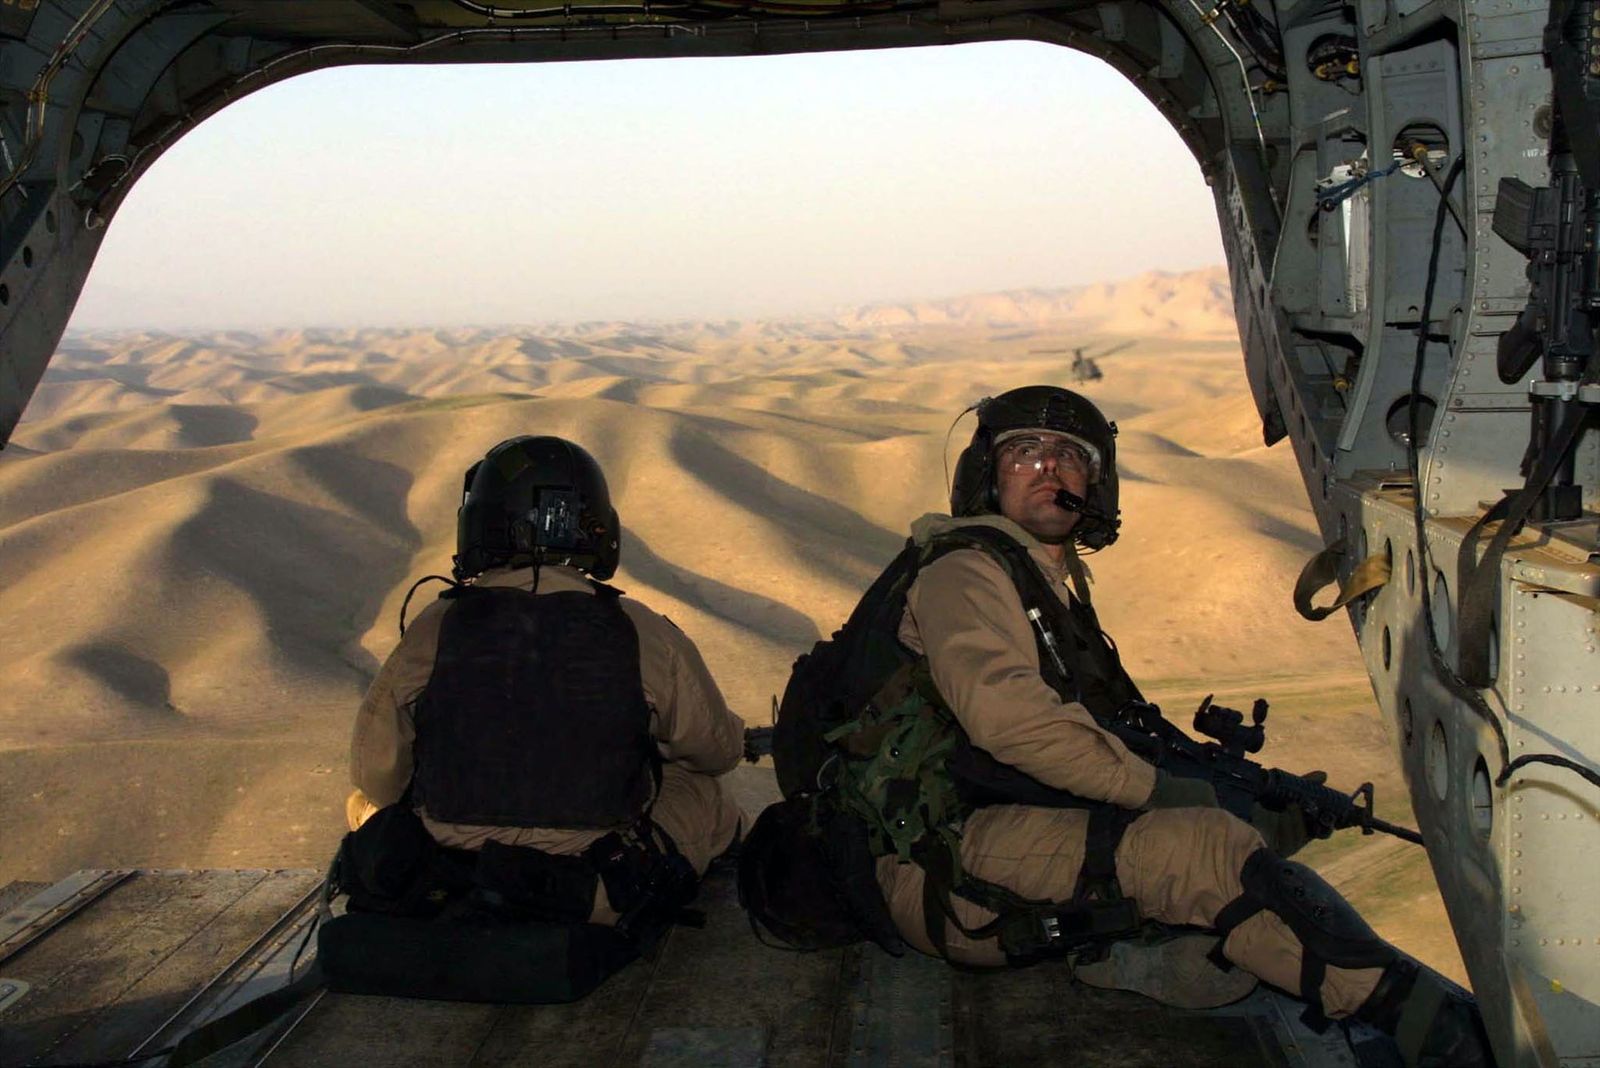 جنود العمليات الخاصة بالجيش الأميركي أثناء عملية في أفغانستان - REUTERS